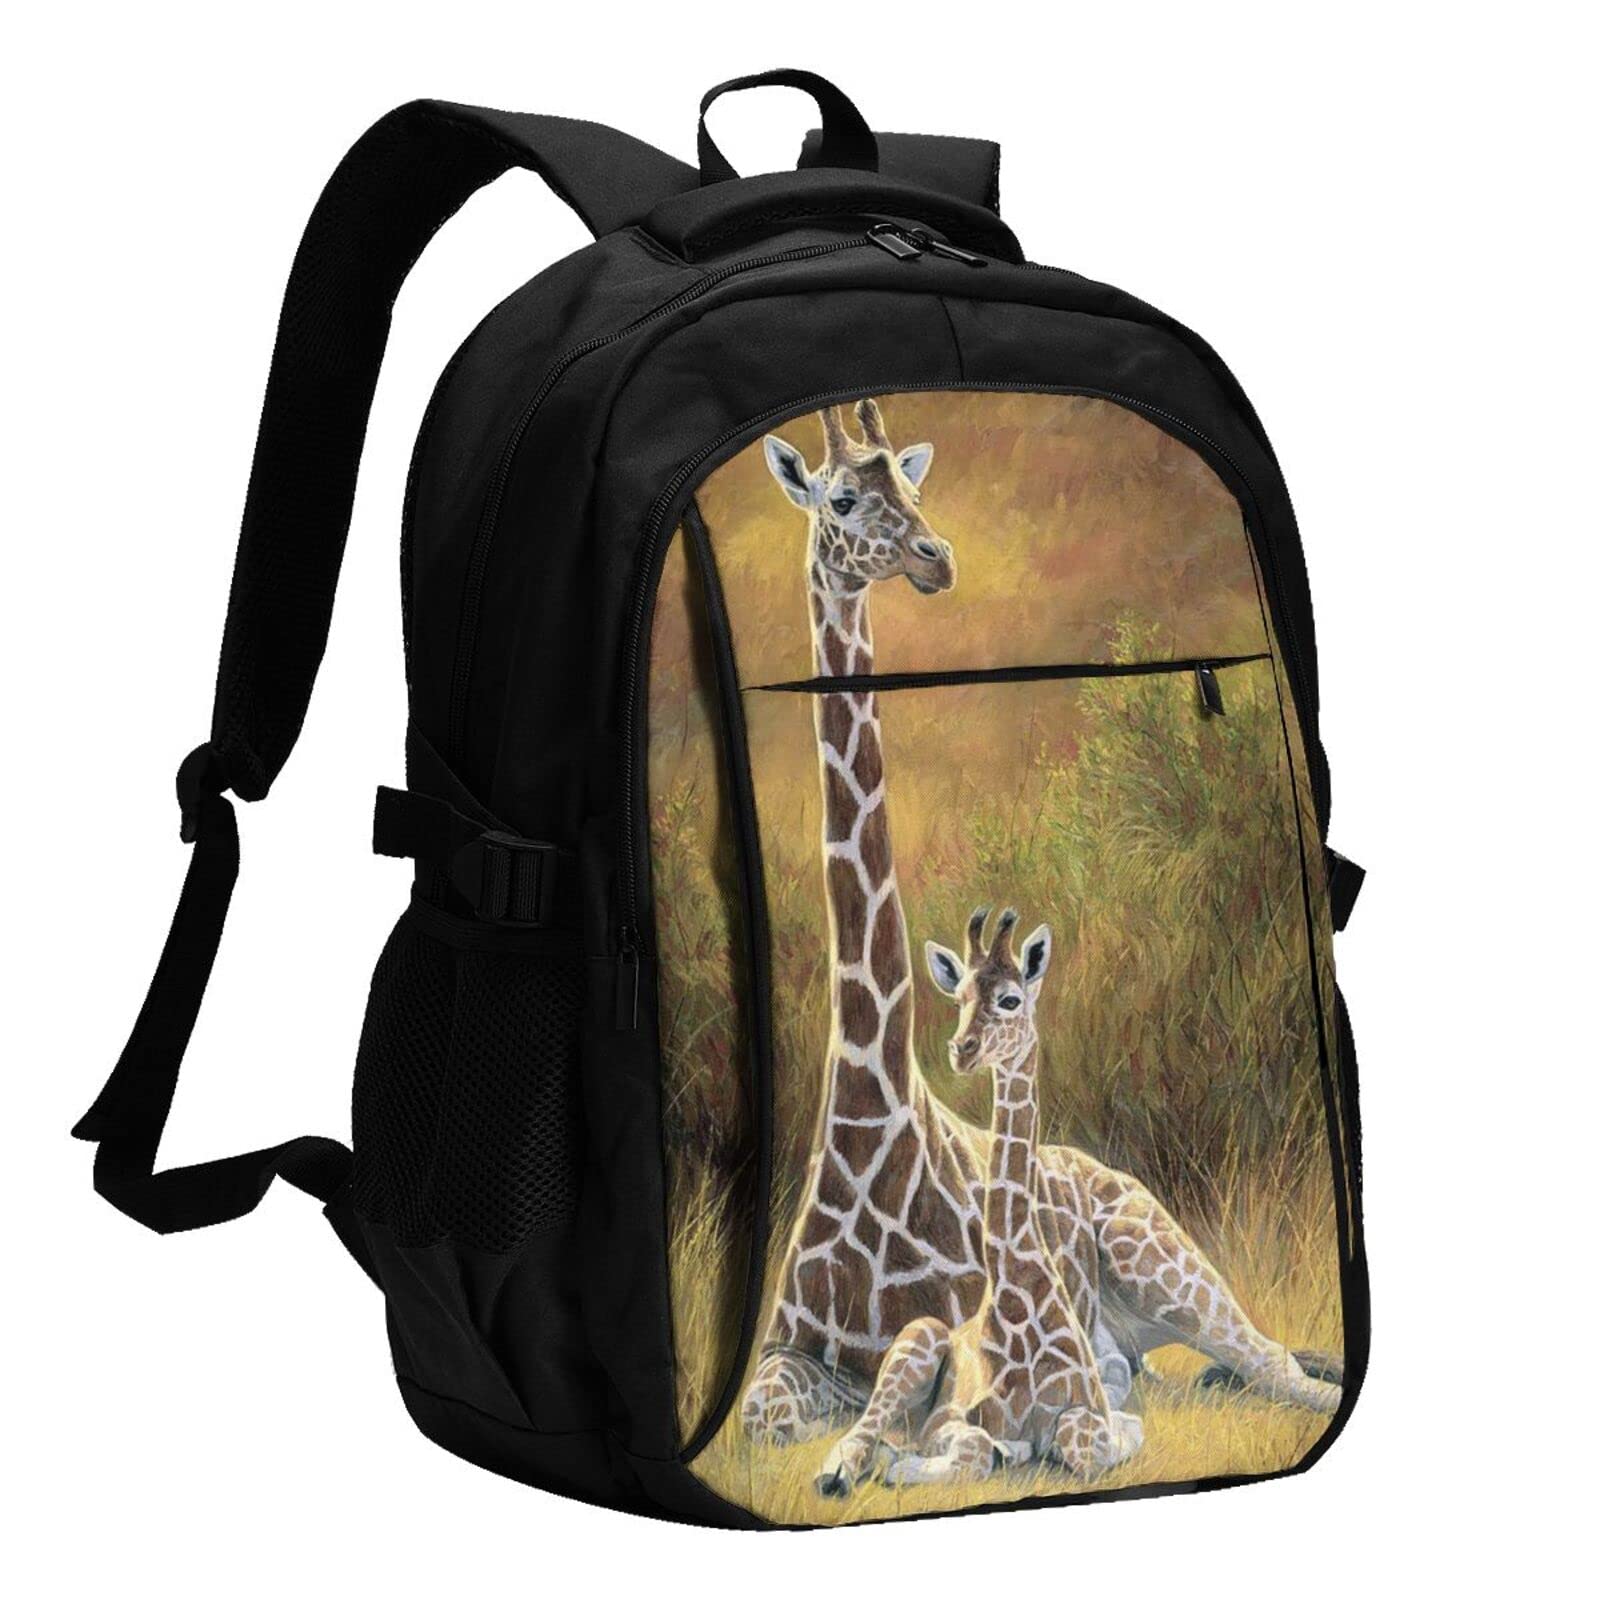 送料無料Giraffe On The Grassland Usb Travel Laptop Backpack Water Resistant Casual Daypack Computer Bag Business並行輸